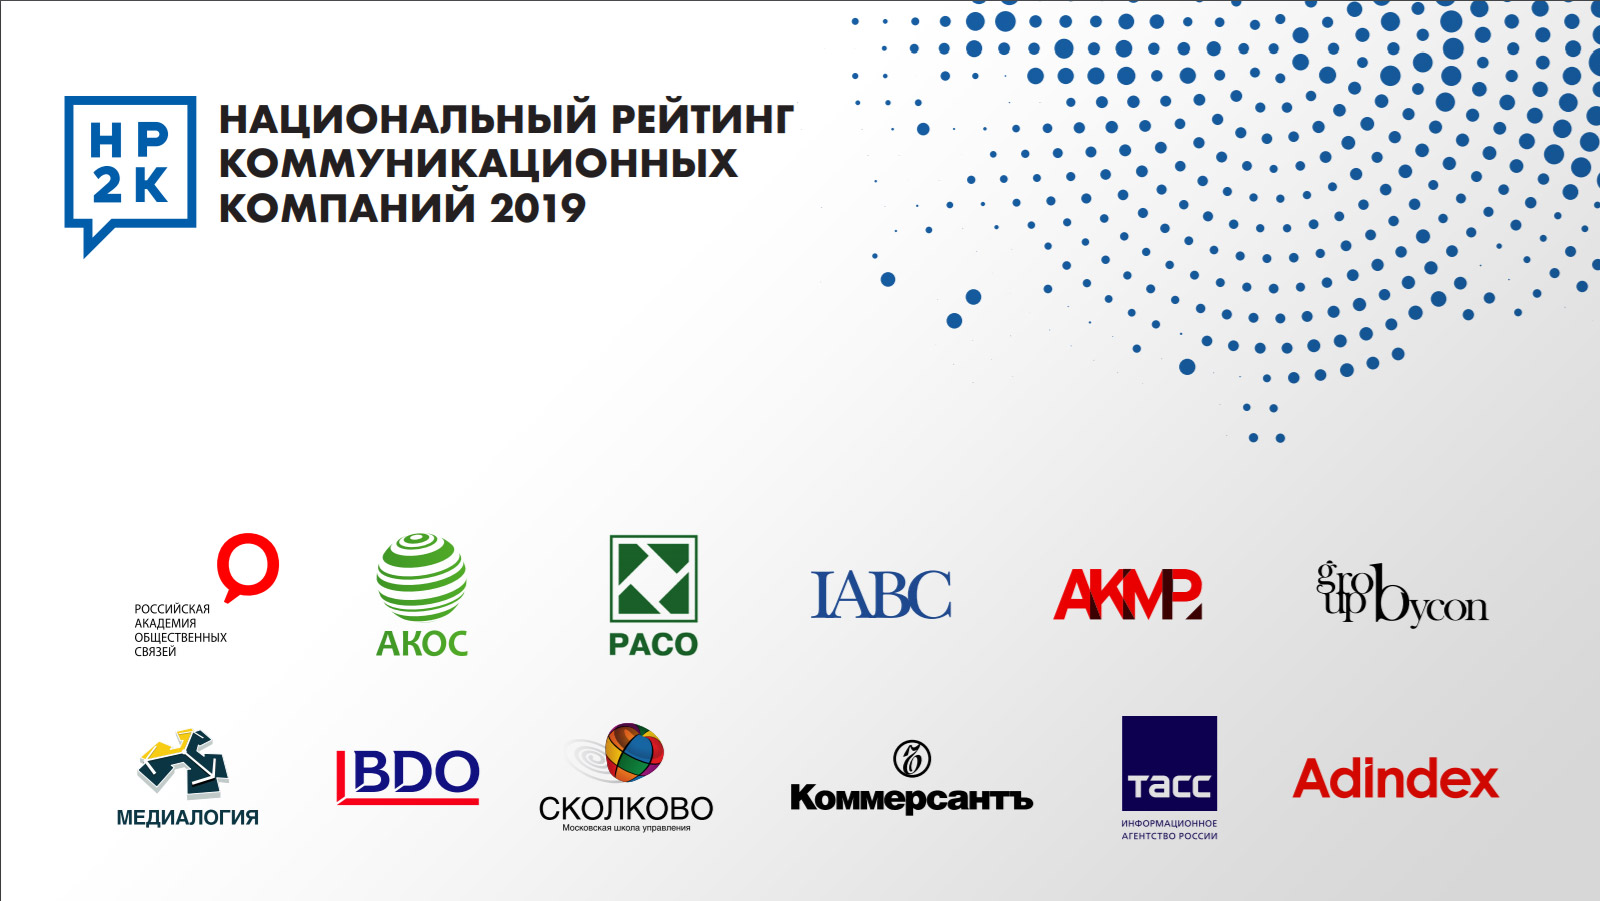 Объявлены результаты Национального рейтинга коммуникационных компаний по итогам 2019 года, Москва